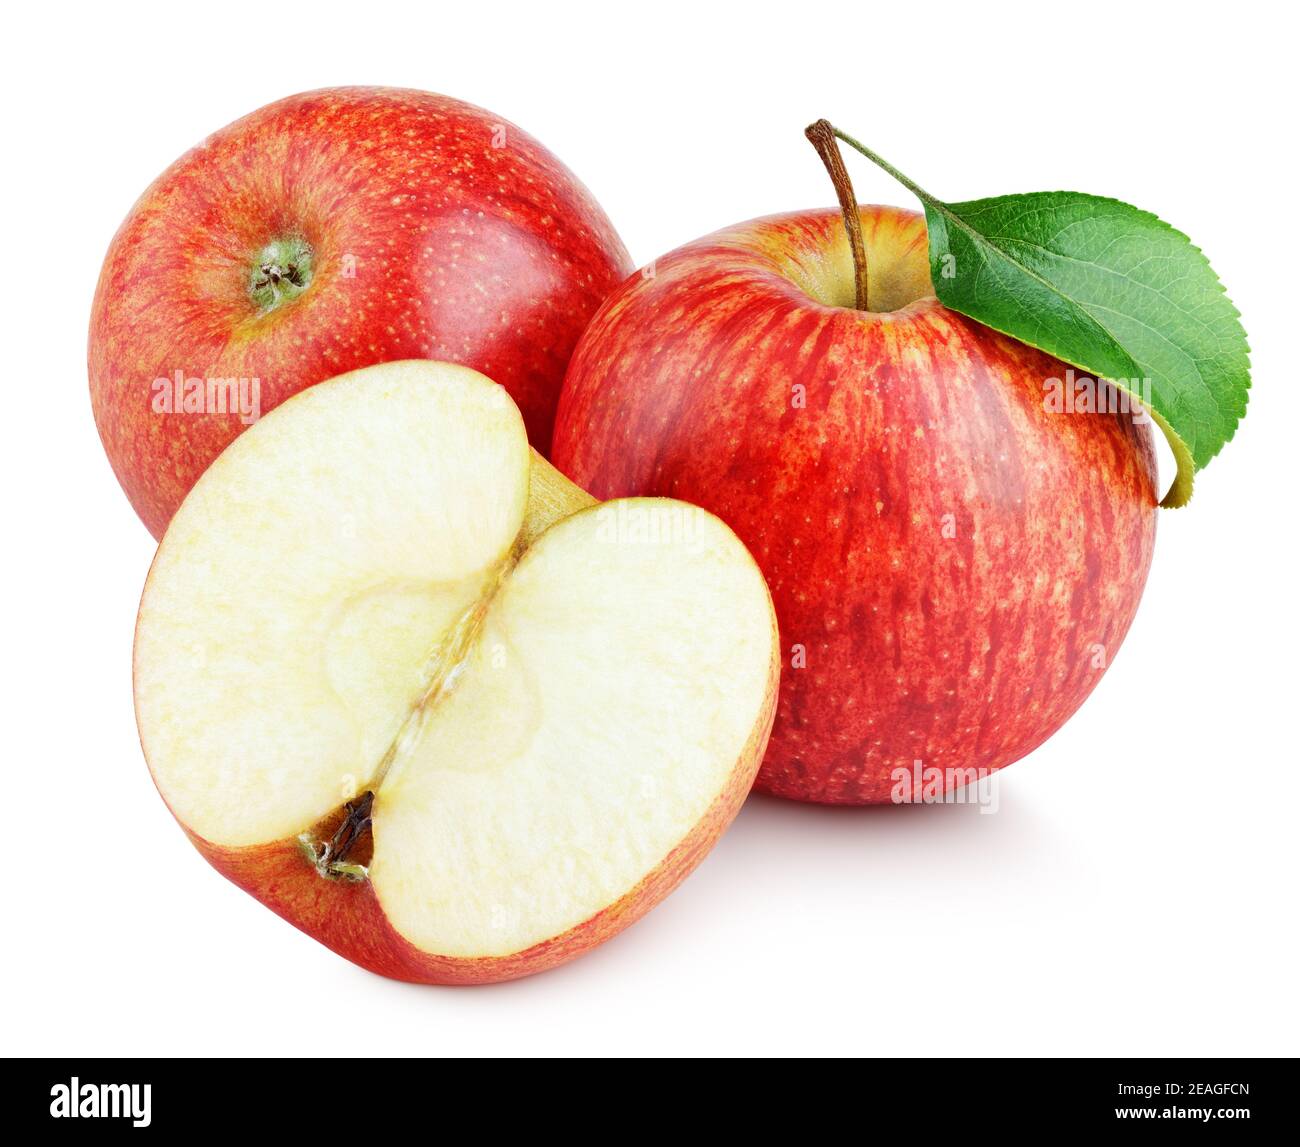 Mela rossa matura con mezzo di mela senza semi e foglia di mela isolata su fondo bianco. Mele rosse e foglie con percorso di ritaglio Foto Stock